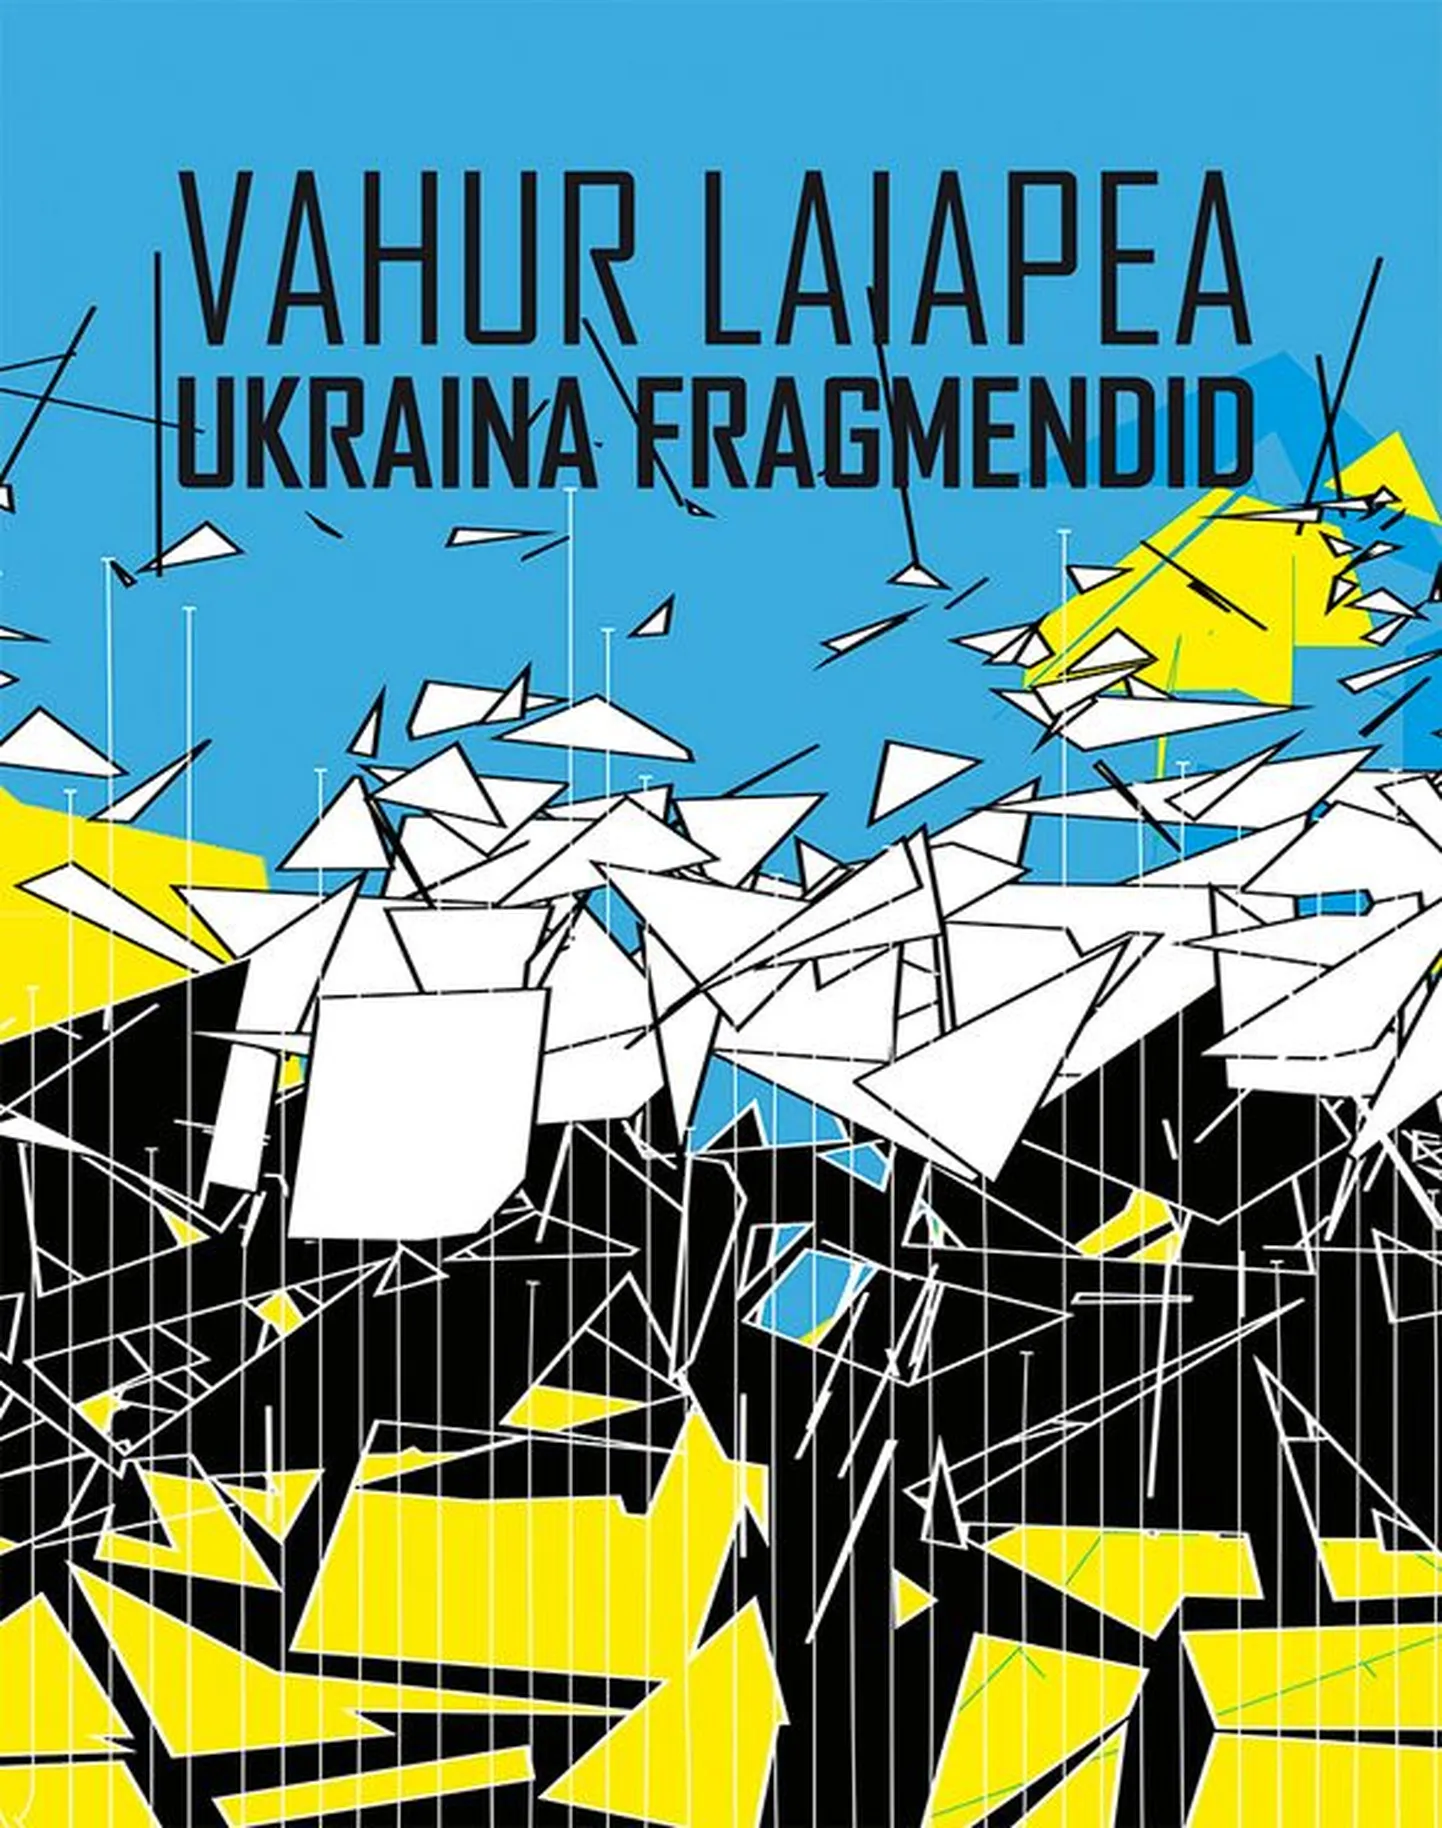 «Ukraina fragmendid» on teine Ukraina-teemaline raamat Vahur Laiapealt.